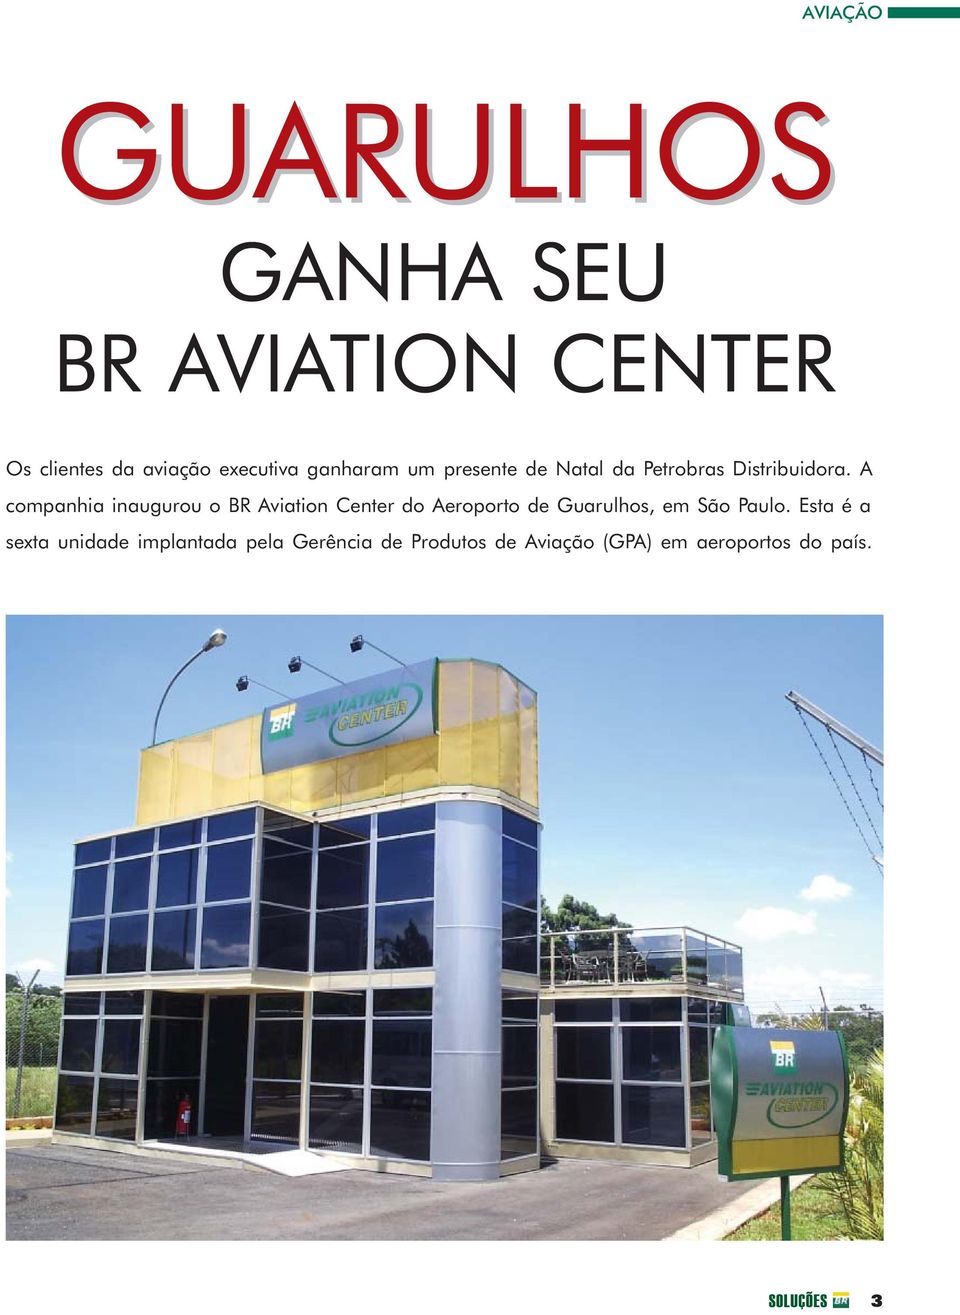 A companhia inaugurou o BR Aviation Center do Aeroporto de Guarulhos, em São